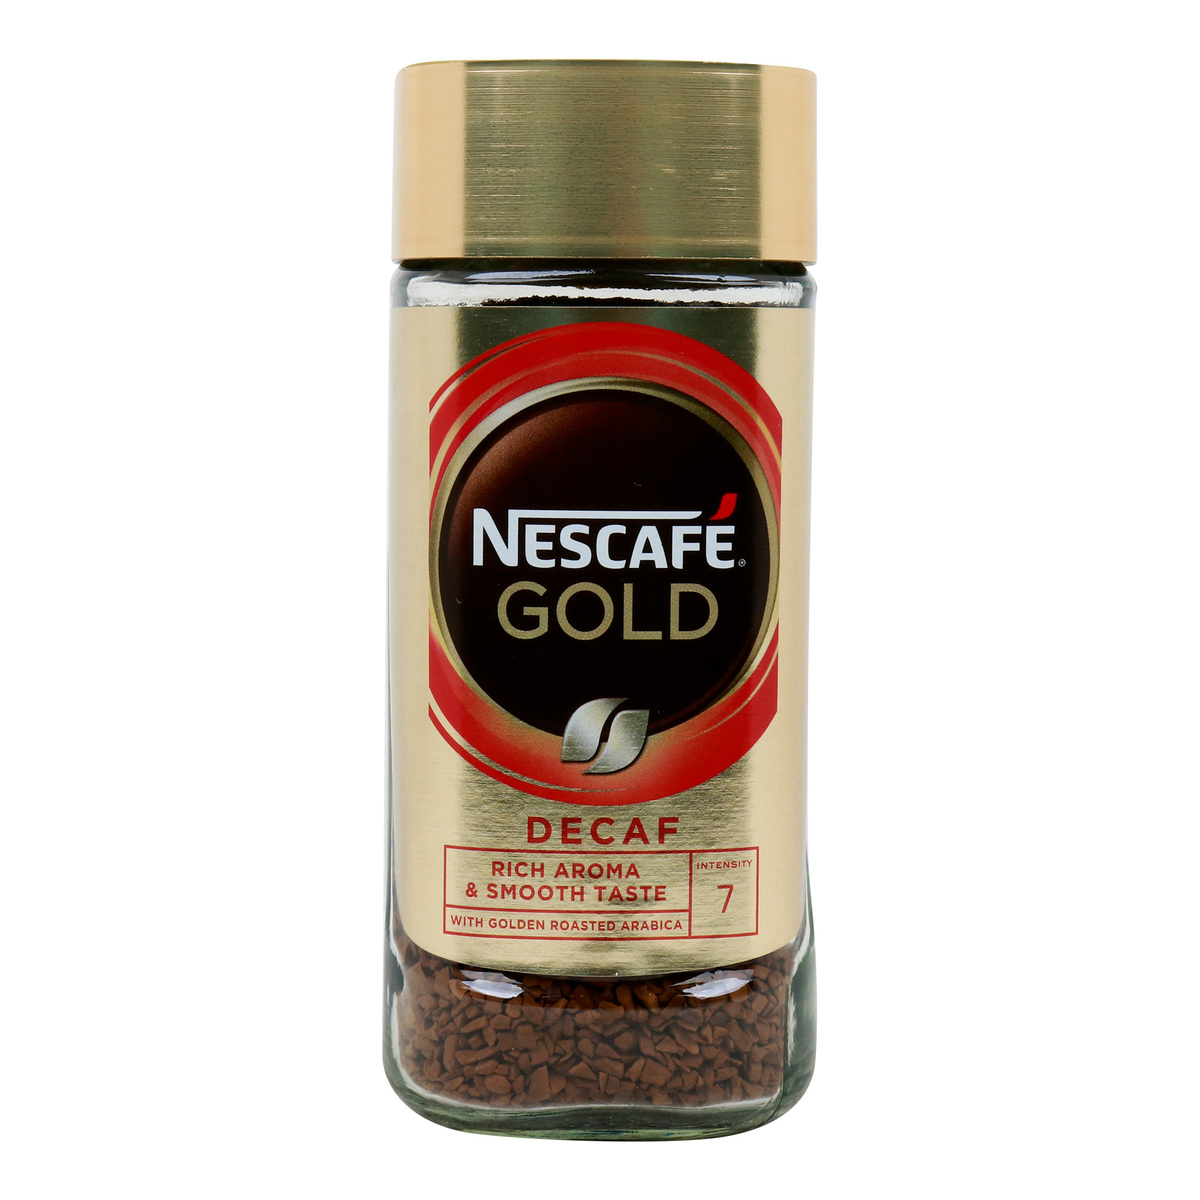 Buy Nescafe Gold Decaf Rich Aroma & Smooth Taste, 95 g Online at Best Price | Coffee | Lulu Kuwait in Kuwait